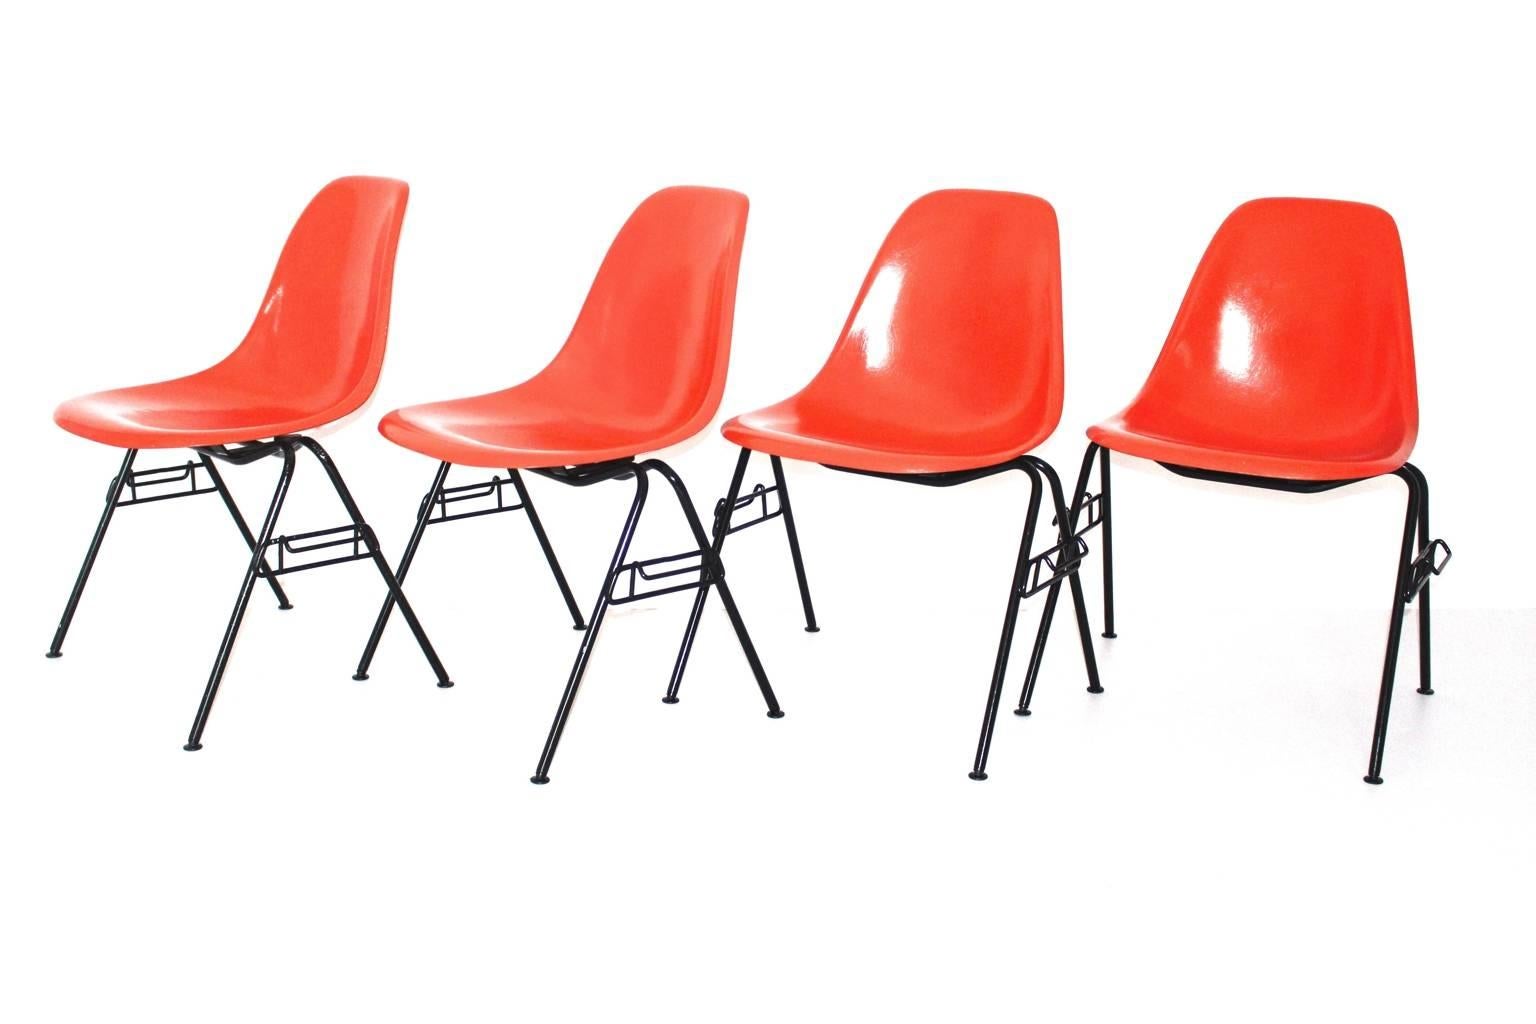 Modernes orangefarbenes Original-Set von 4 Esszimmerstühlen von Charles und Ray Eames aus den 1950er Jahren.
Der Esszimmerstuhl trägt die Modellbezeichnung DSS - N, wurde von Ray und Charles Eames in den 1950er Jahren entworfen und von Hermann